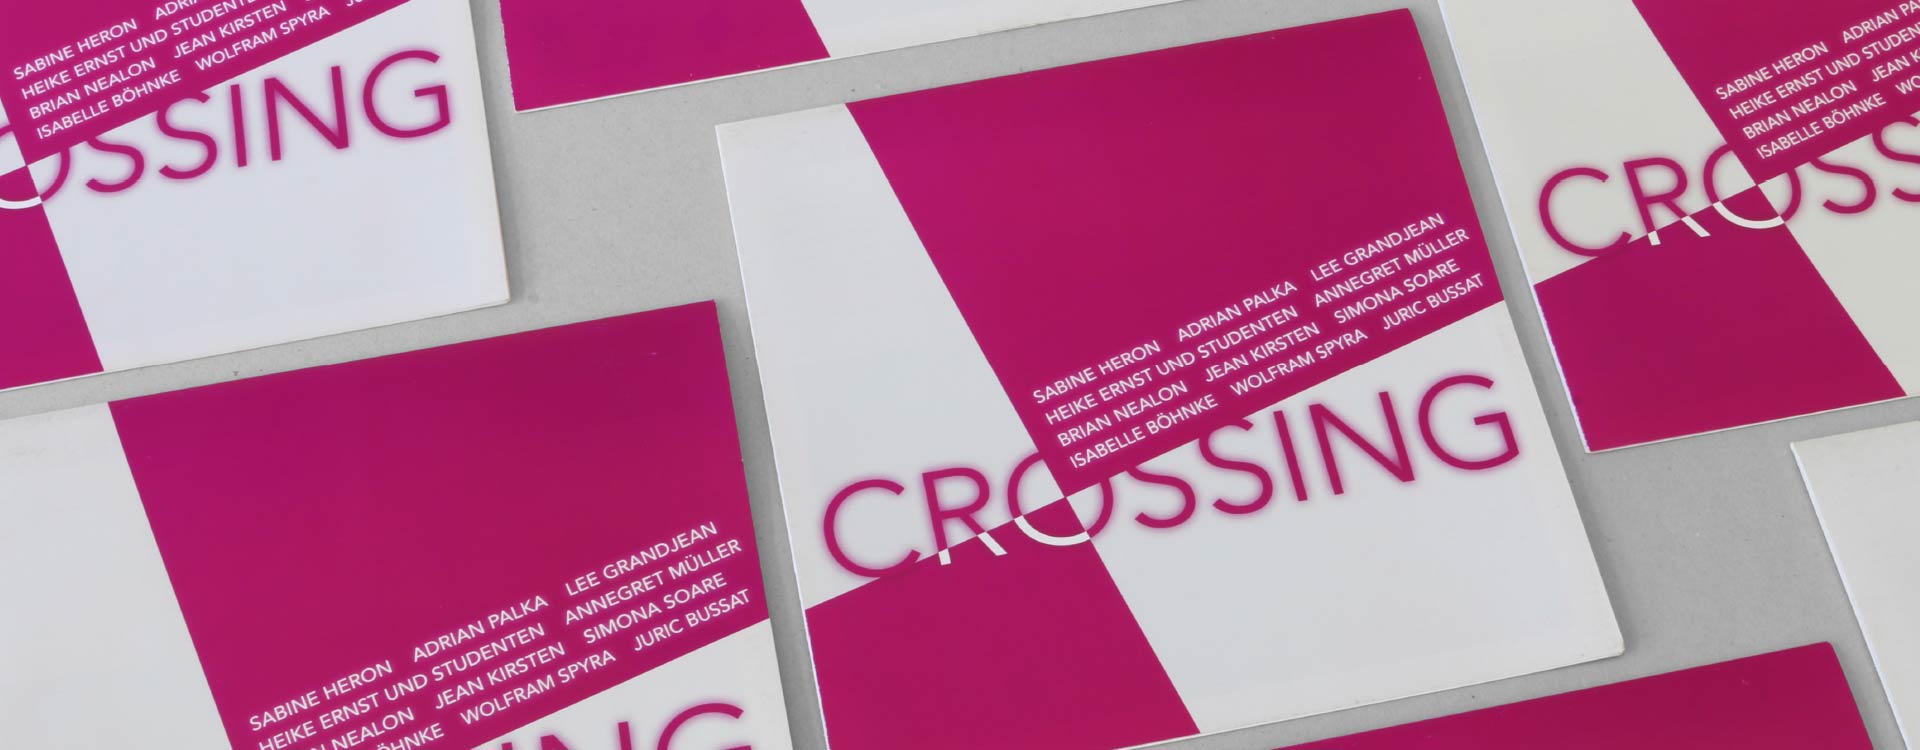 Faltblatt zur Ausstellung „Crossing“ in den Spreehöfen in Berlin-Schöneweide; Design: Kattrin Richter | Büro für Grafikdesign